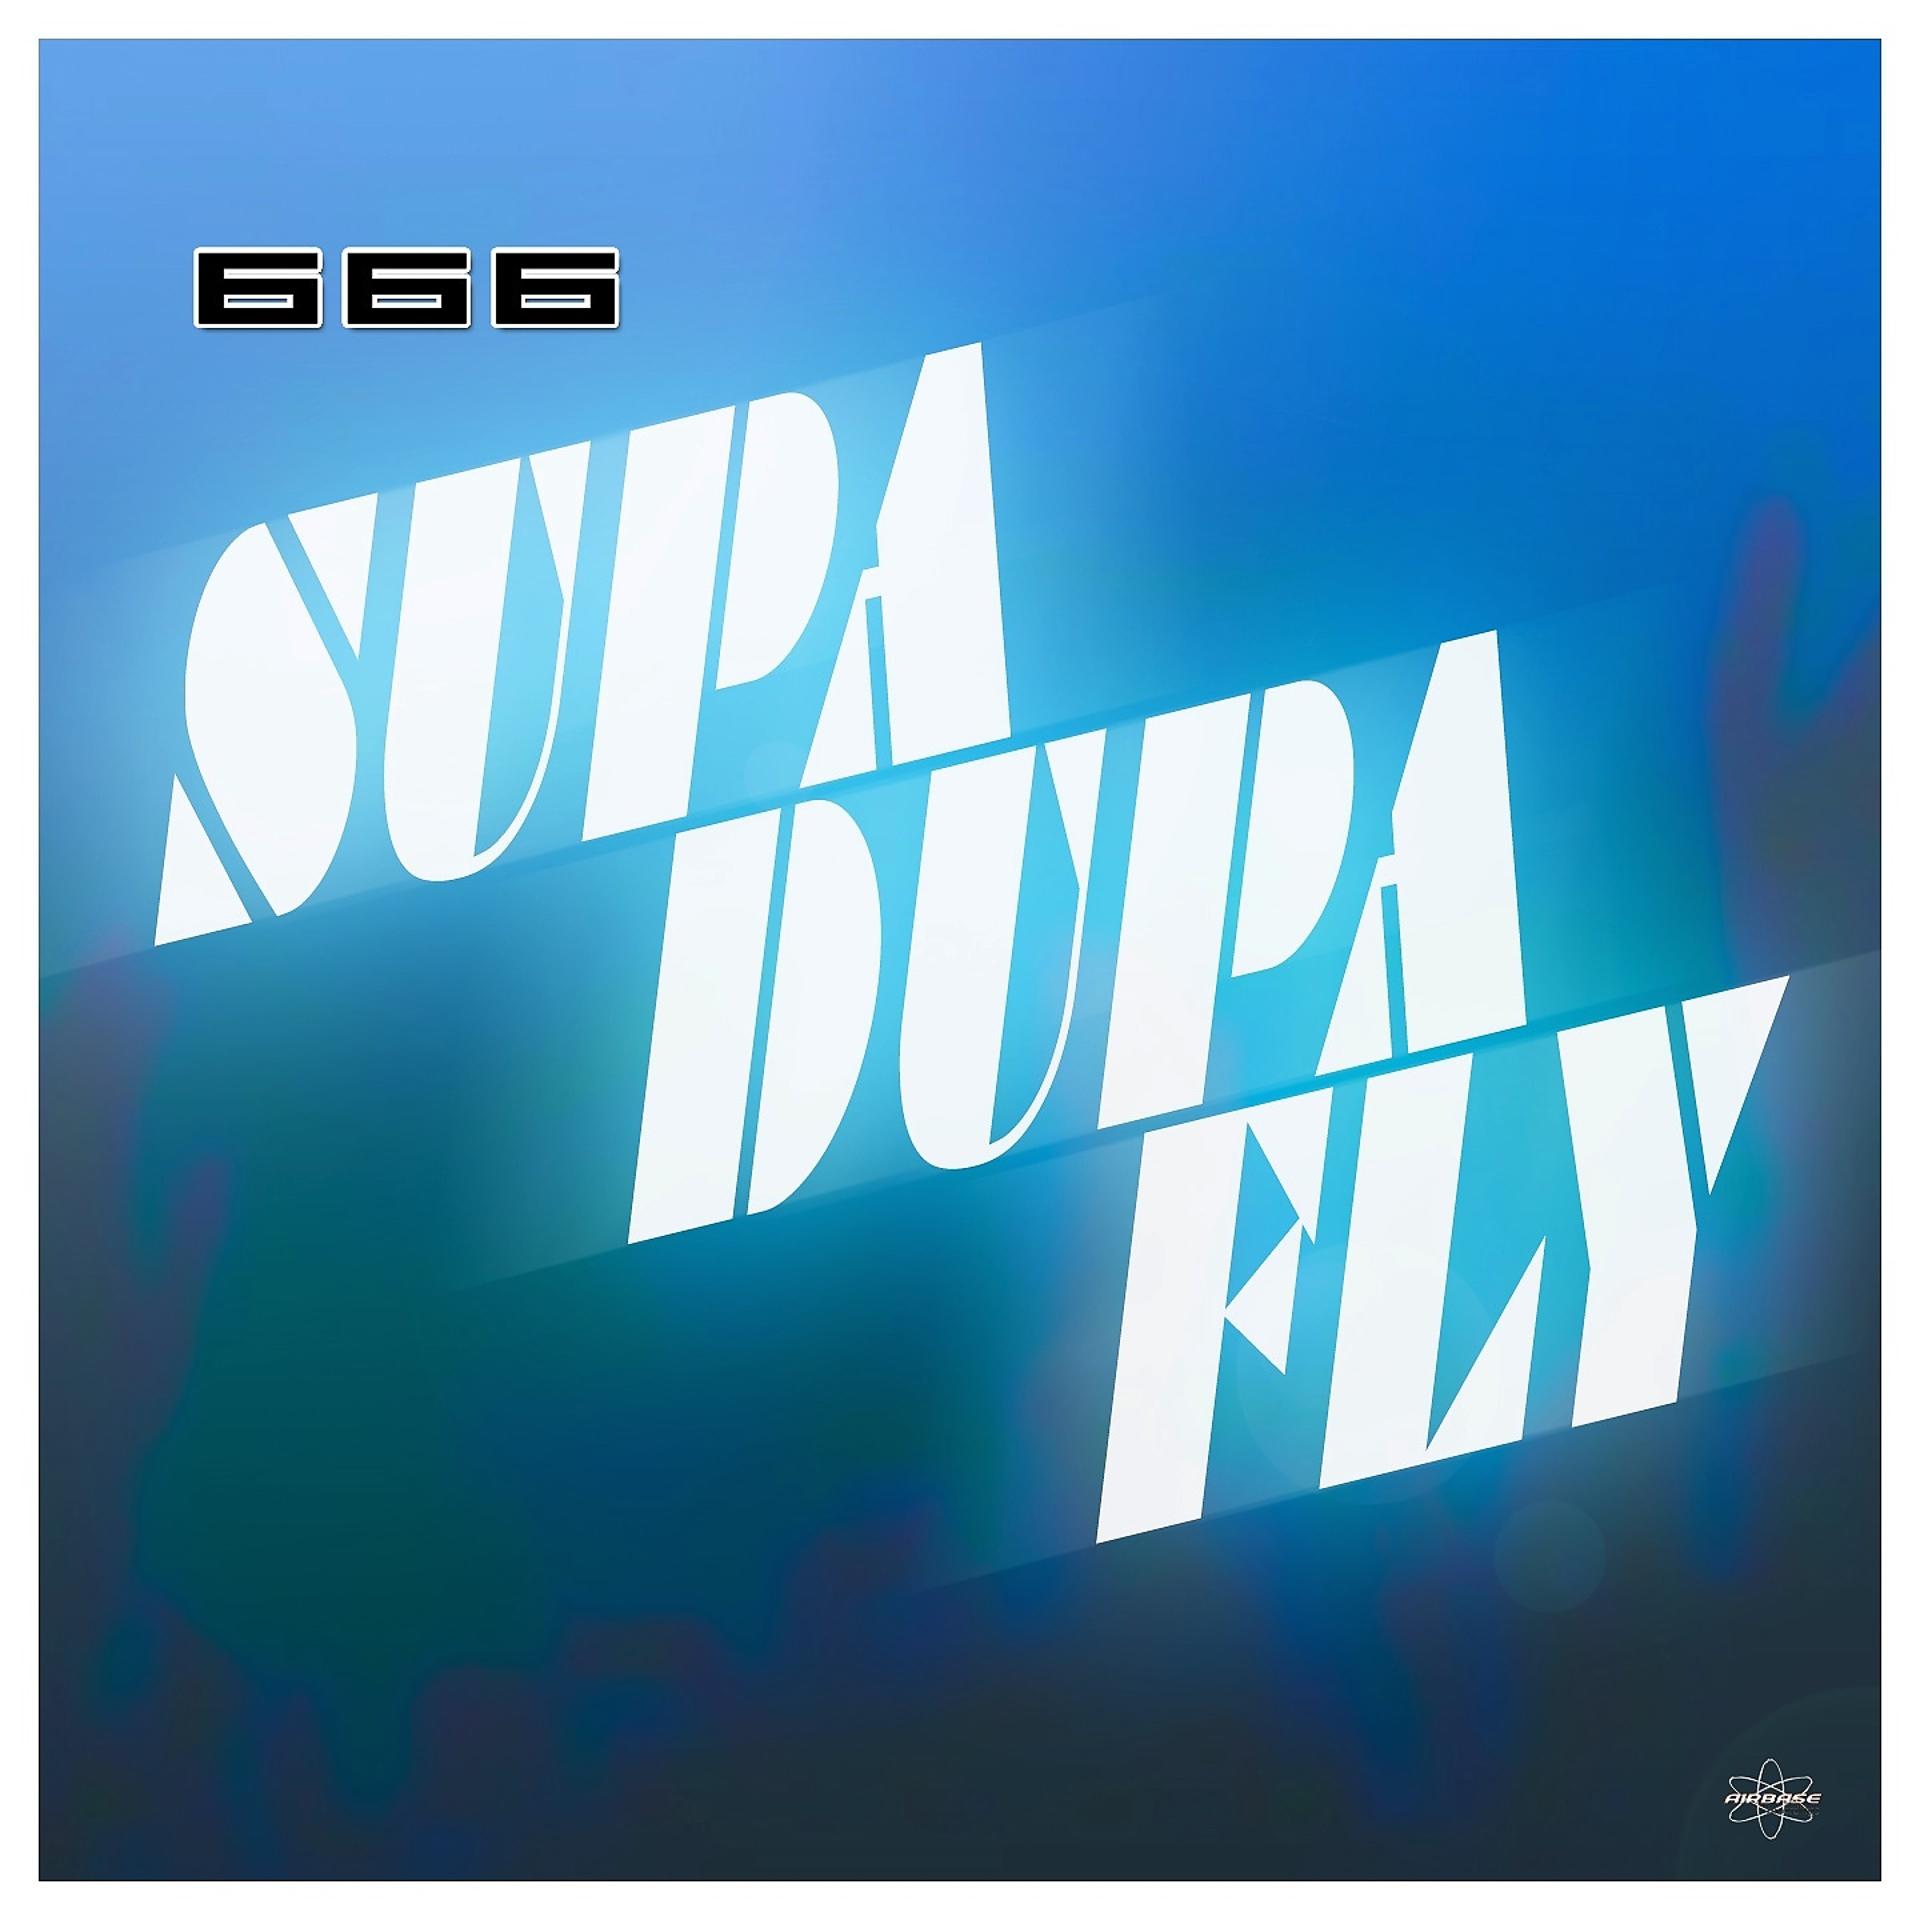 Постер альбома Supa-Dupa-Fly